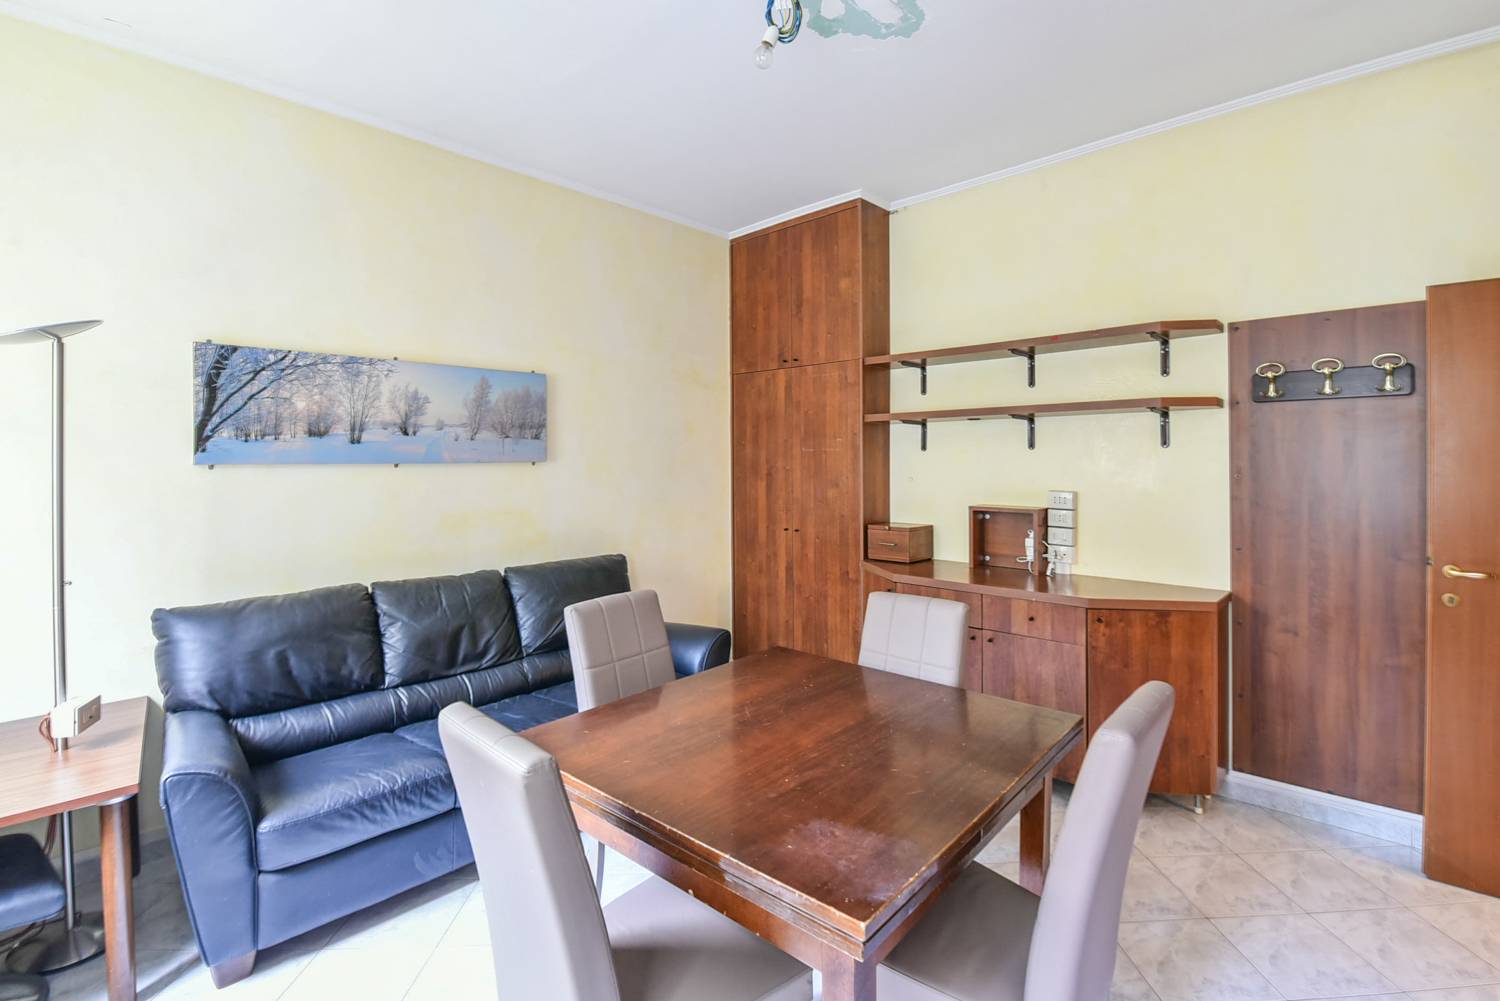 Appartamento in vendita a Malnate, 3 locali, zona Località: Centro, prezzo € 75.000 | PortaleAgenzieImmobiliari.it